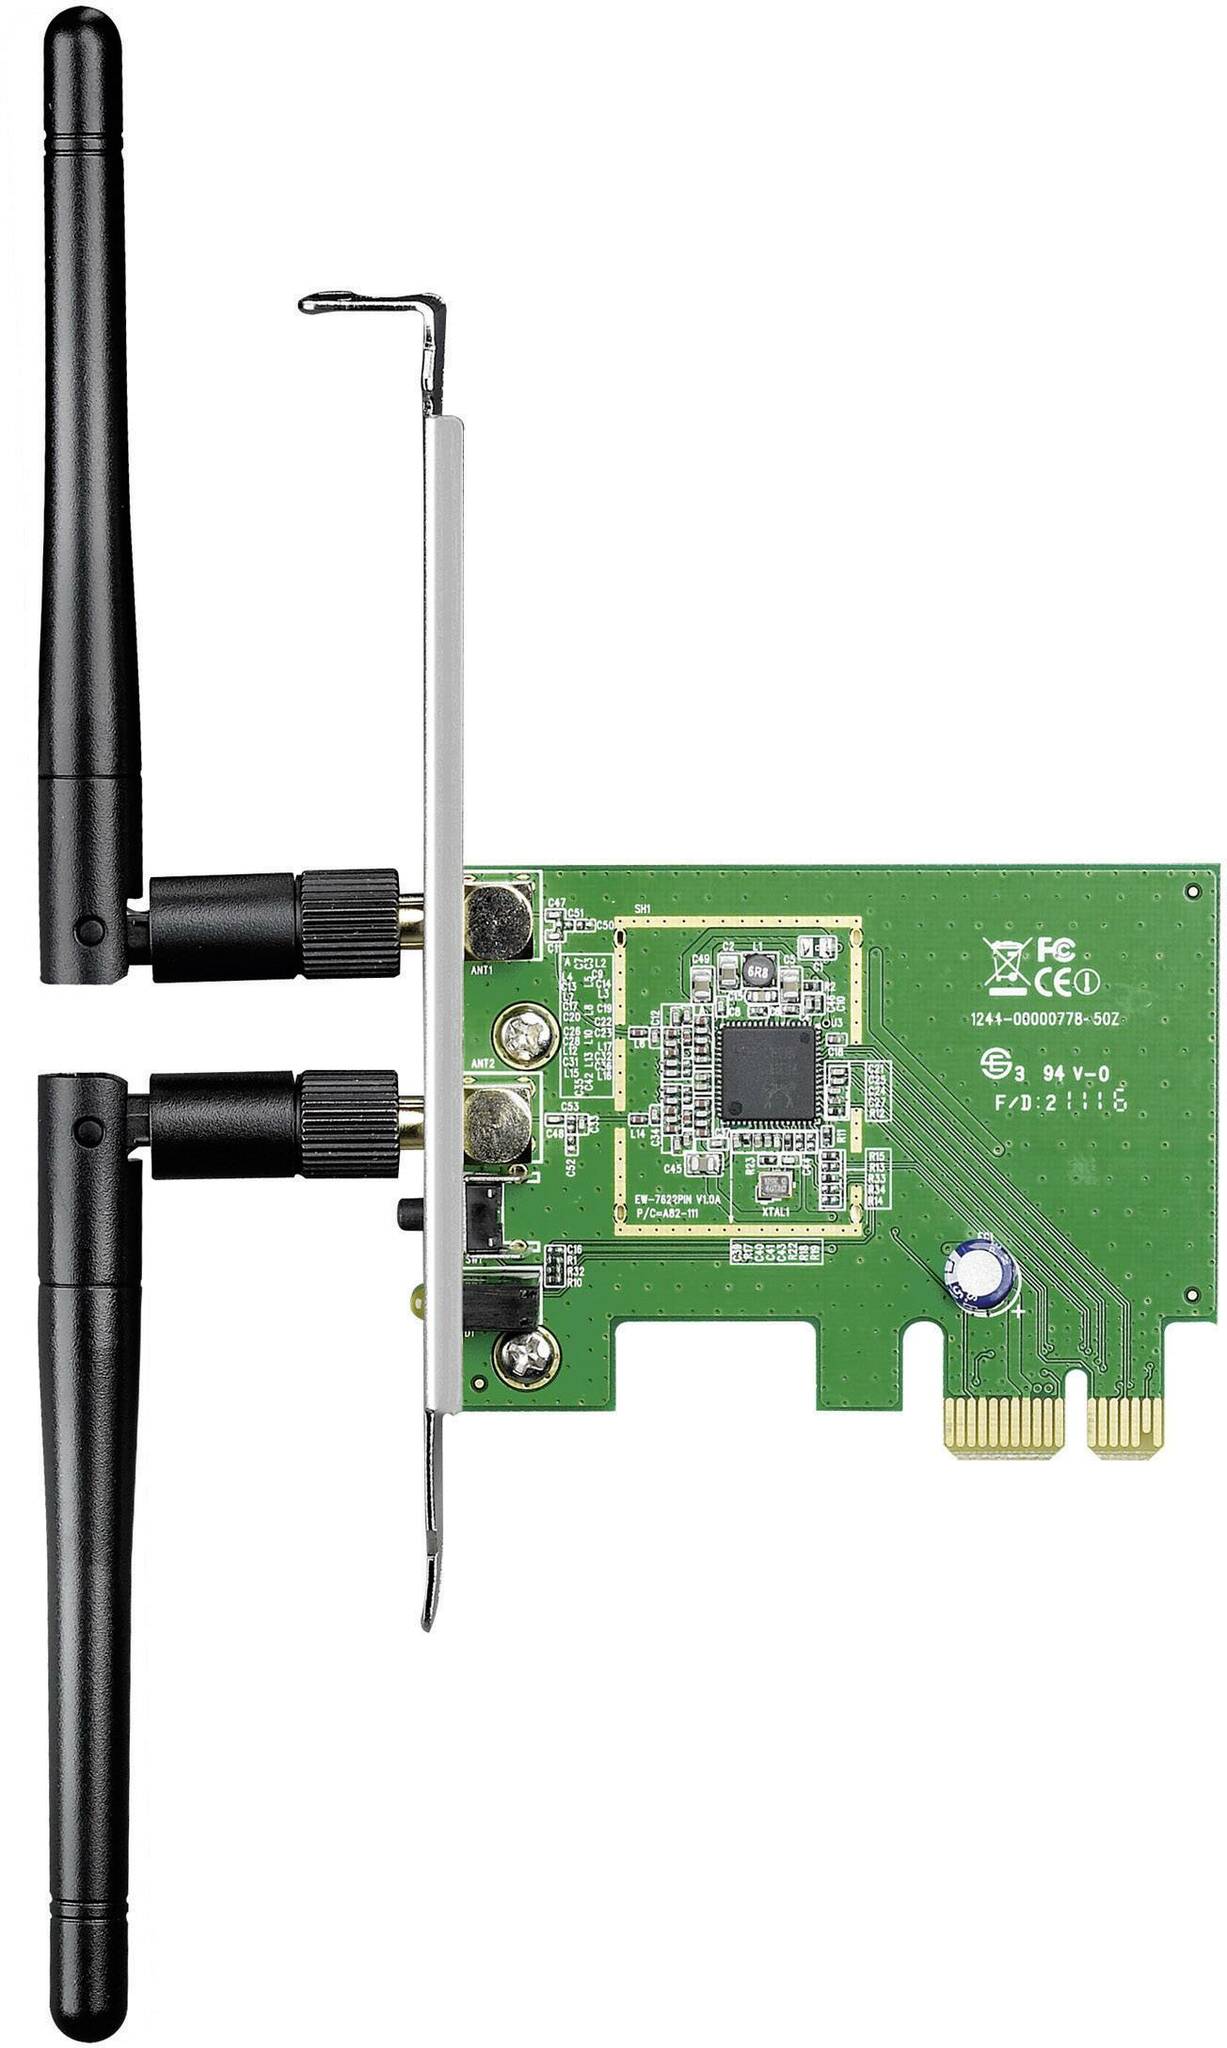 ASUS PCI-N15 PCE N300 Wireless LAN Adaptor